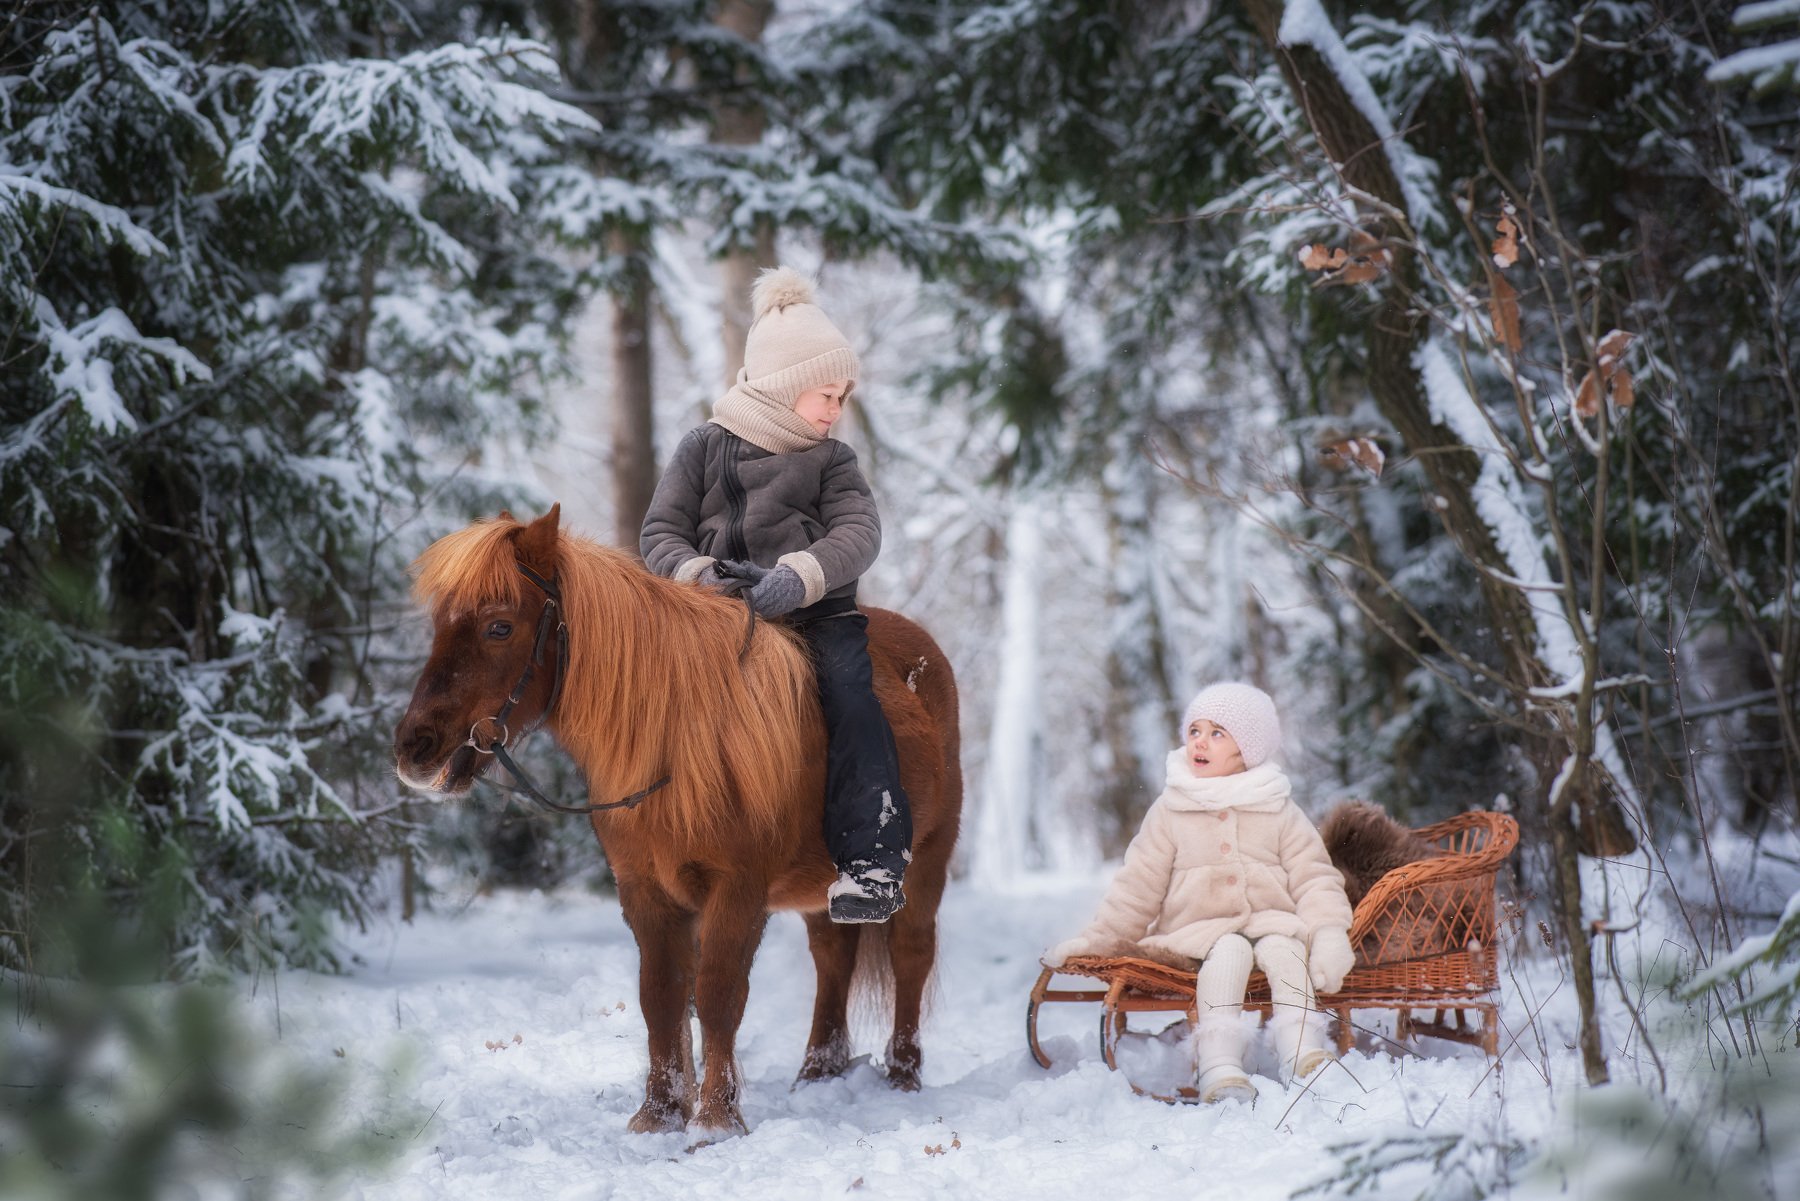 дети мальчик девочка лошадь лошадка пони зима мороз снег лес сосны деревья березы санки саночки прогулка, Елена Успенская